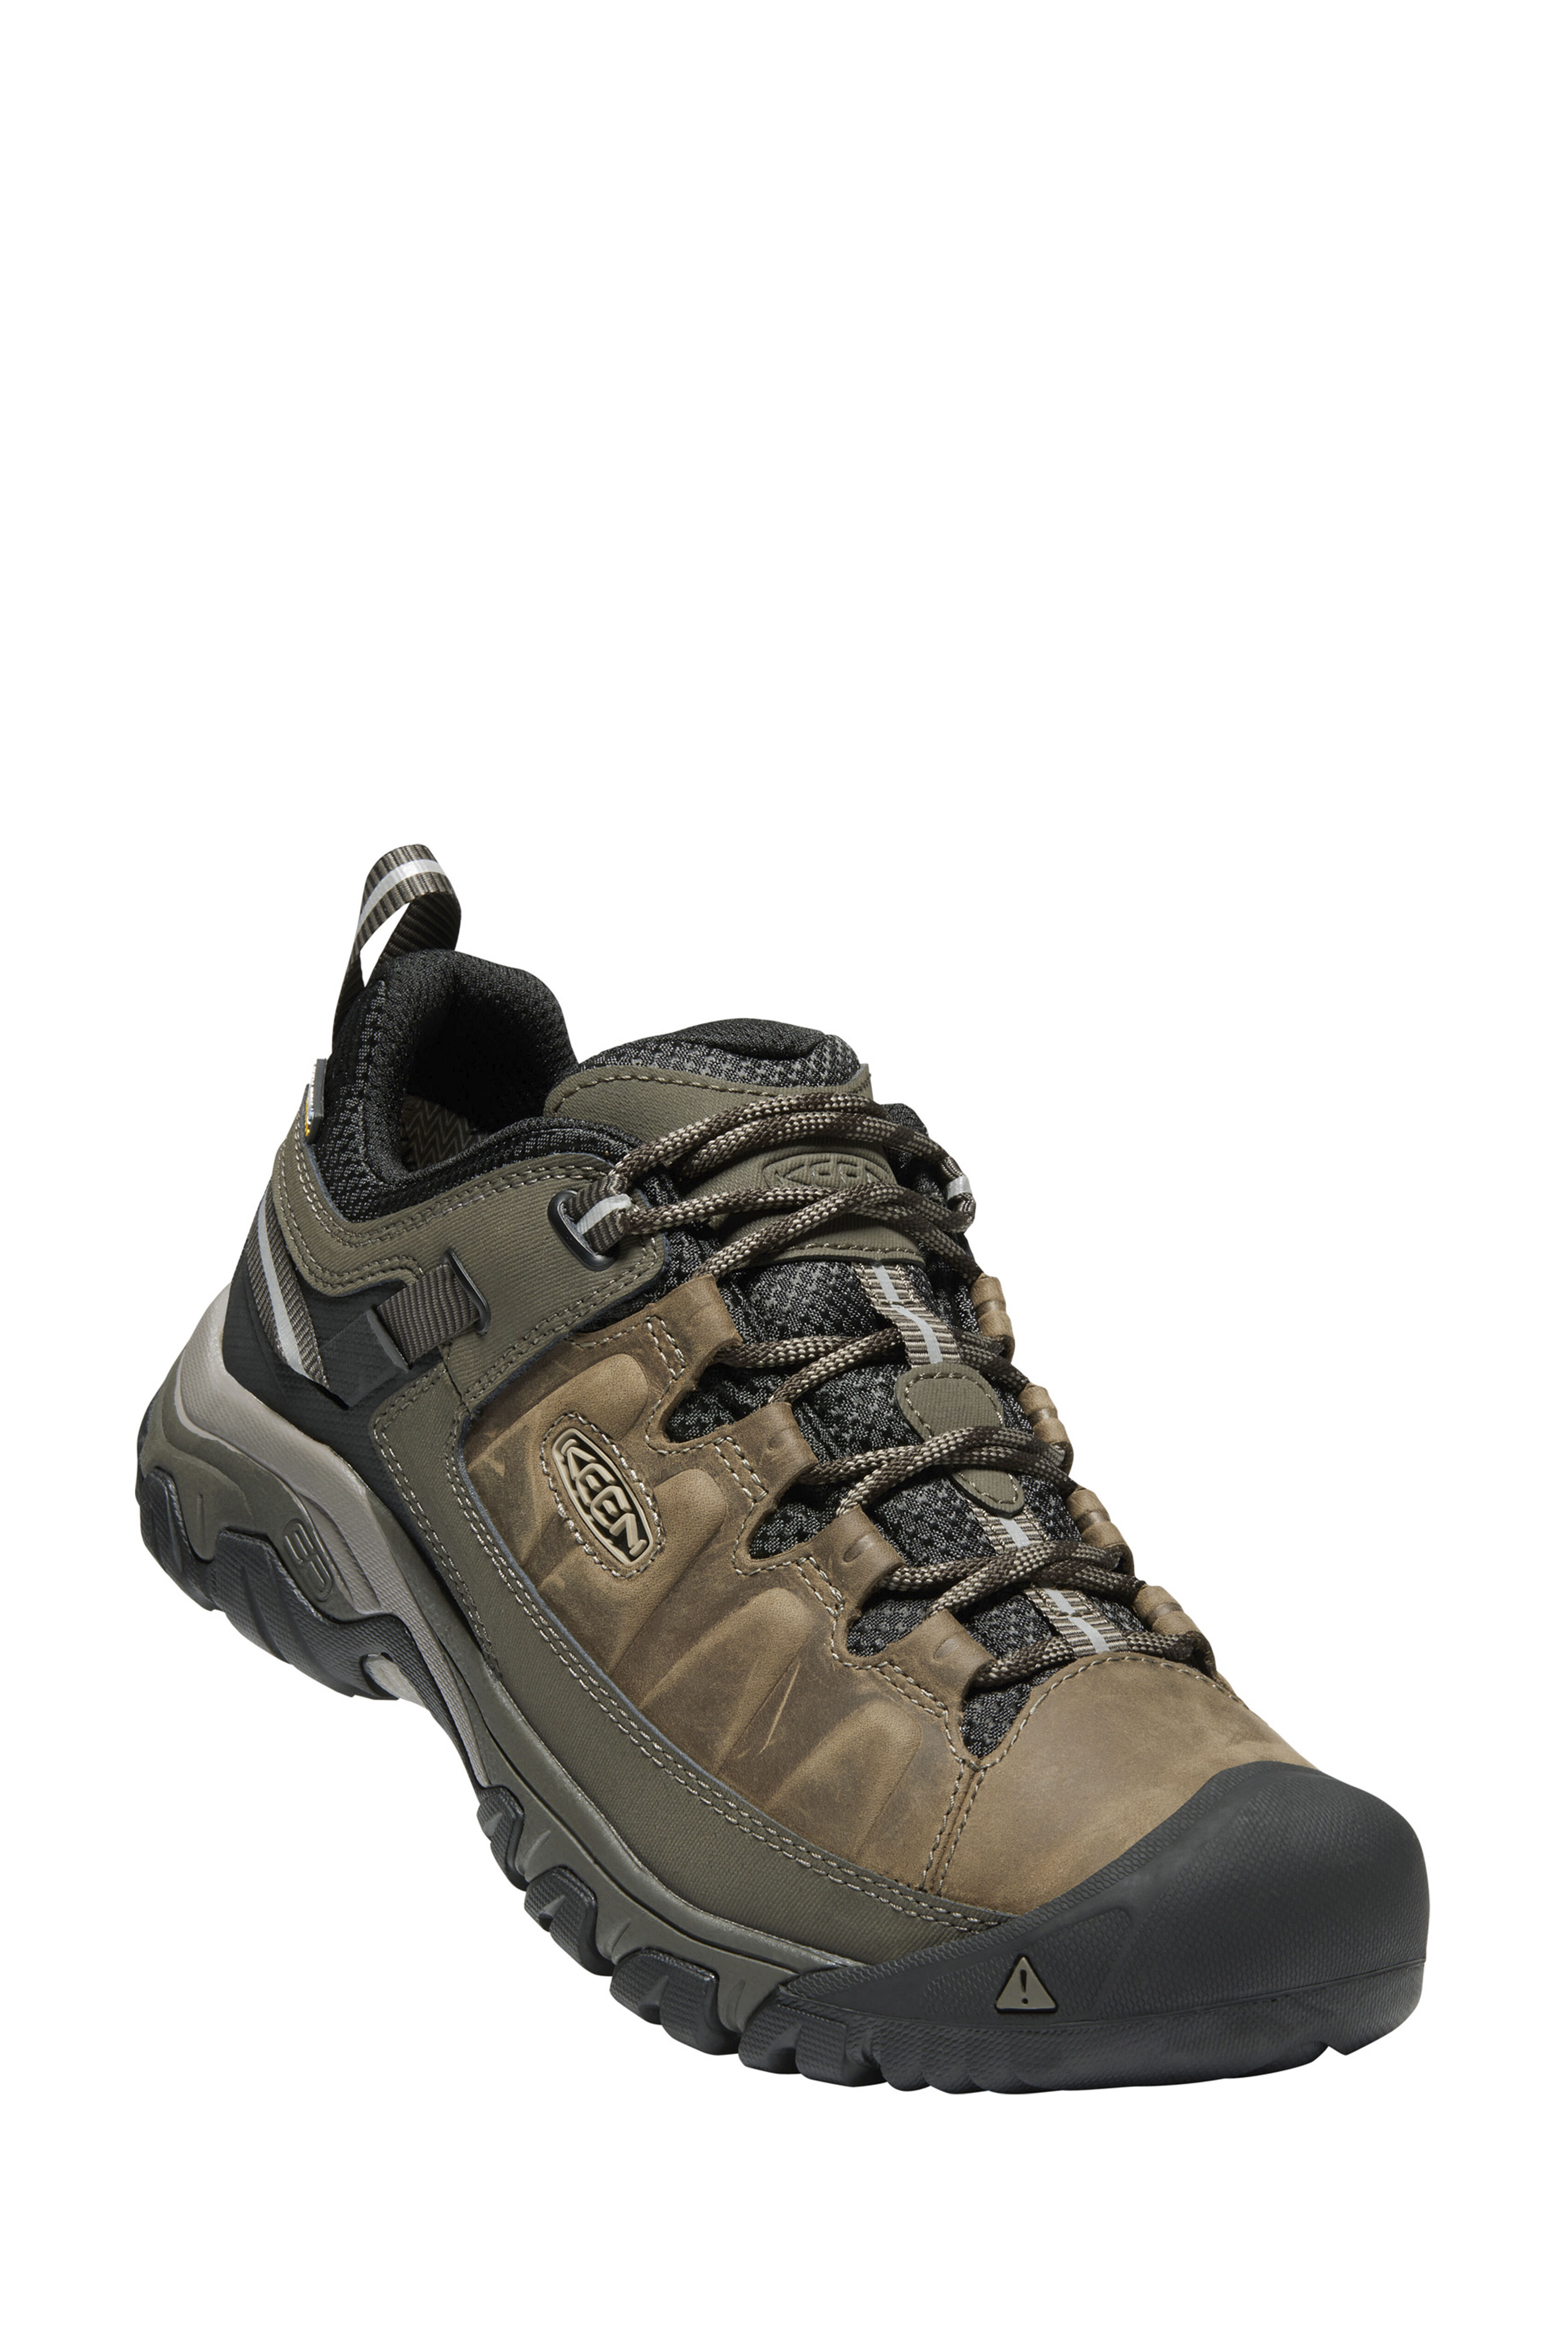 Keen Targhee III WP Hiking Shoes — Men 